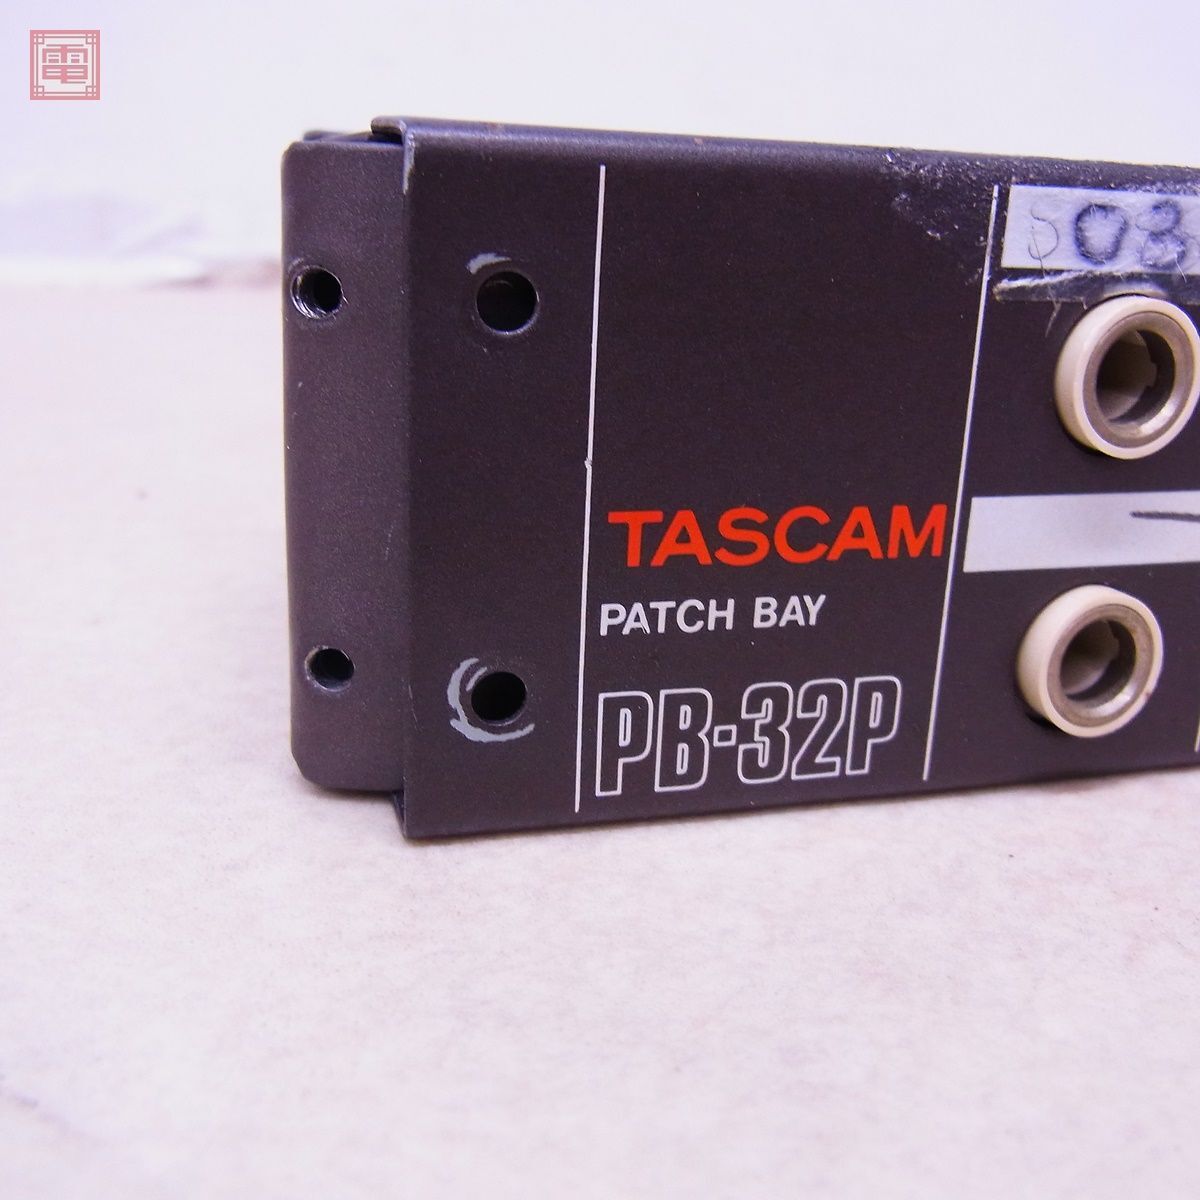 TASCAM PB-32P наборное поле PATCH BAY Tascam Teac TEAC Junk детали брать .. пожалуйста [20